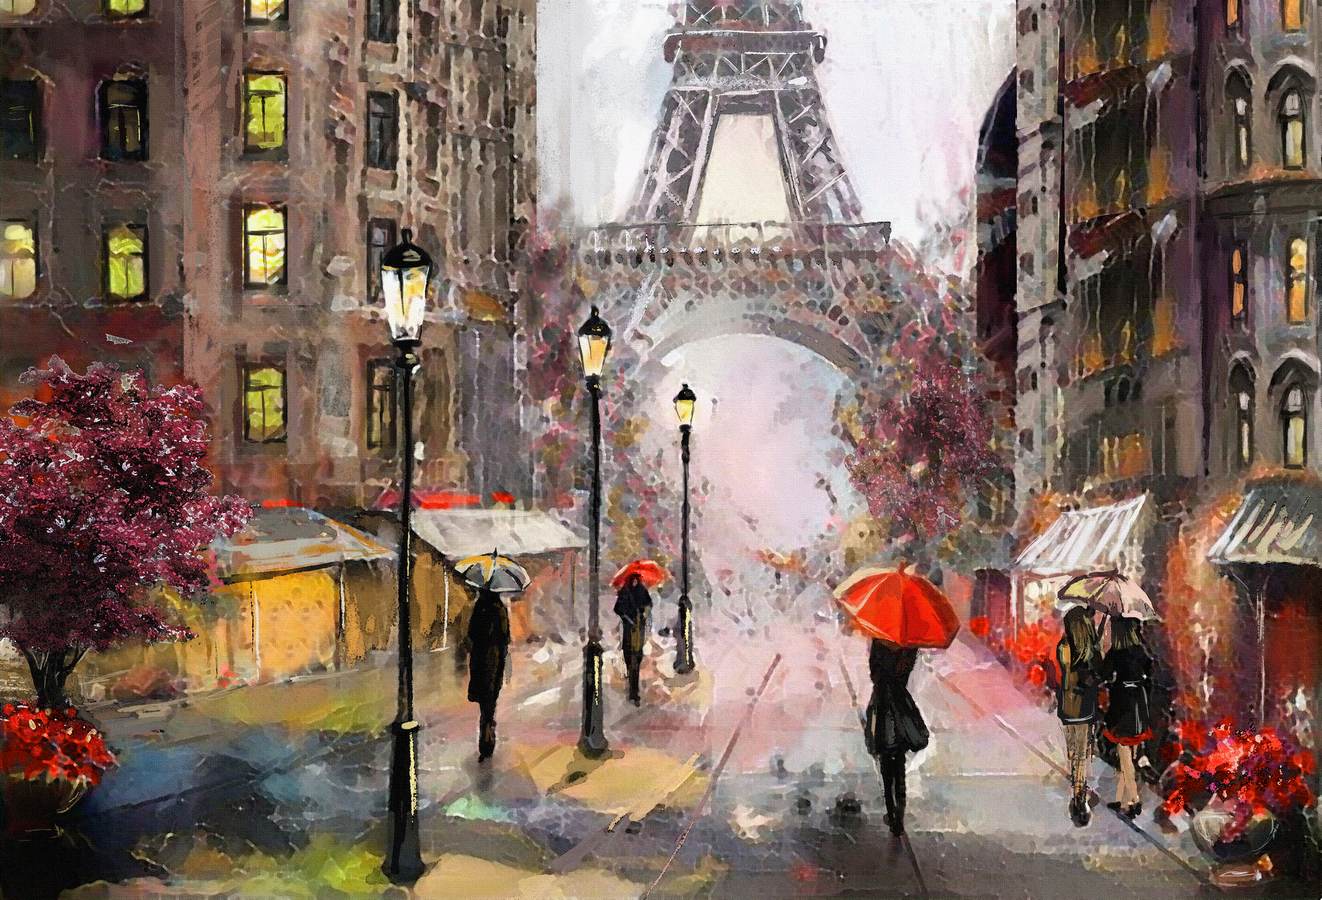 Paris In The Rain Paintings - 1322x900 Wallpaper 